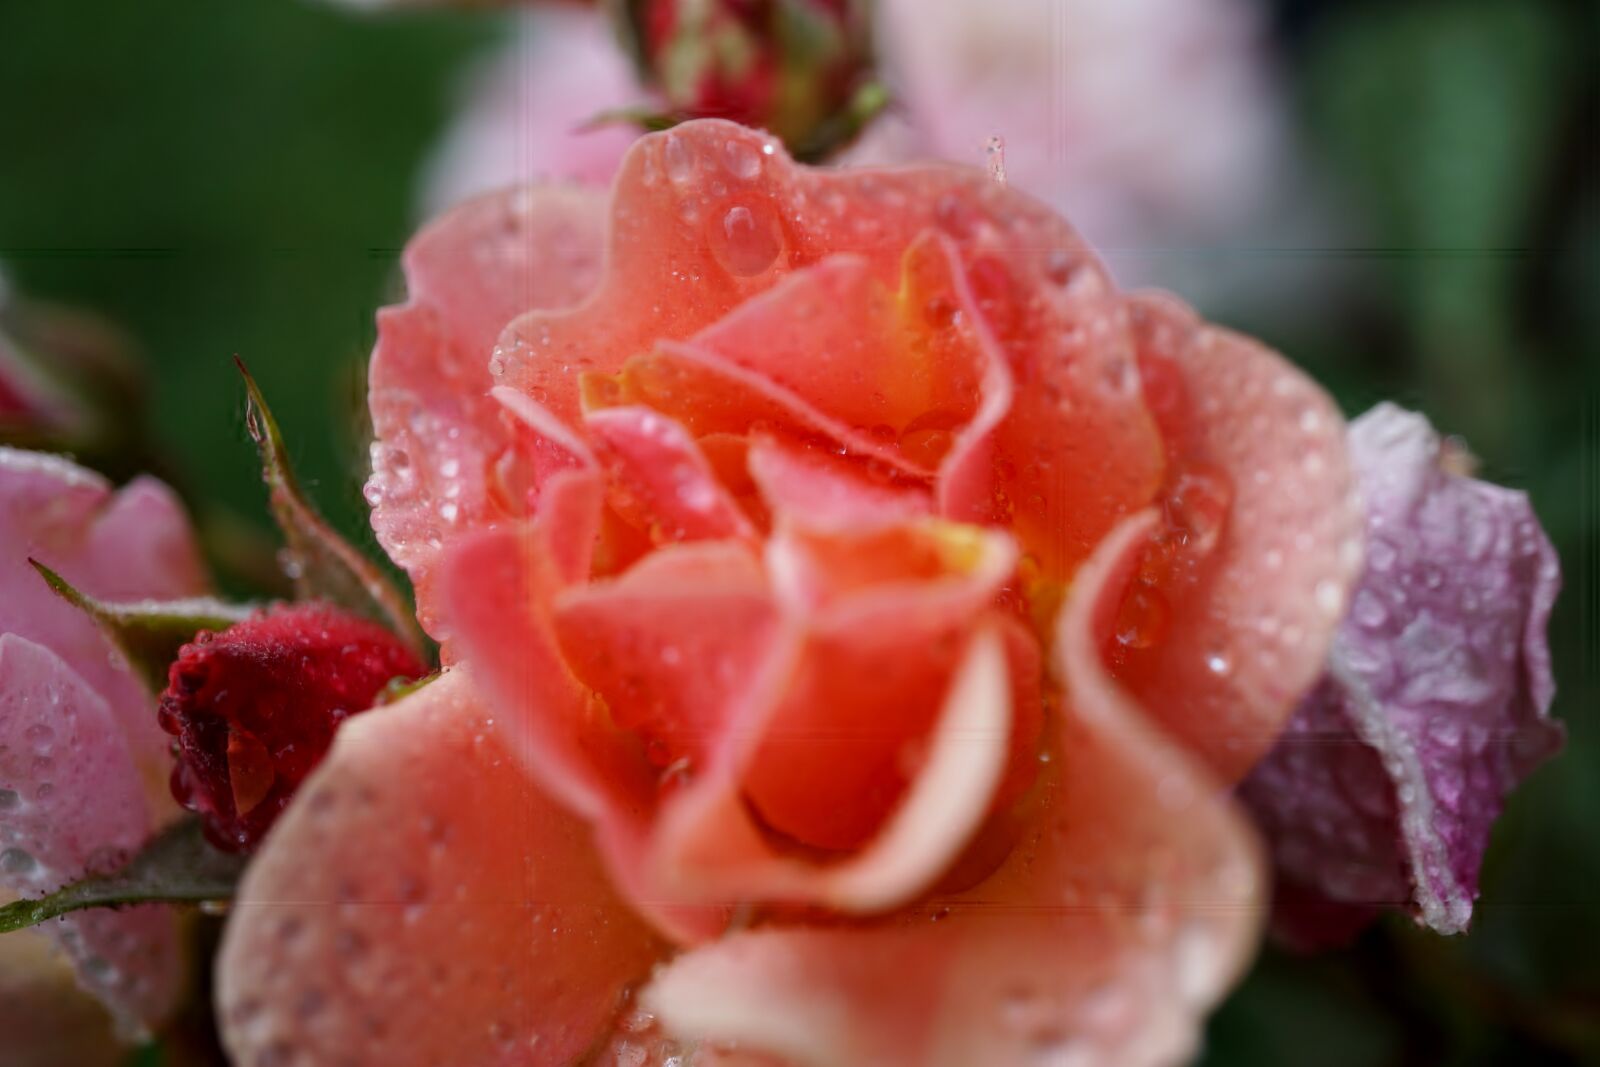 Sony E 30mm F3.5 Macro sample photo. Rose, garden, blossom photography